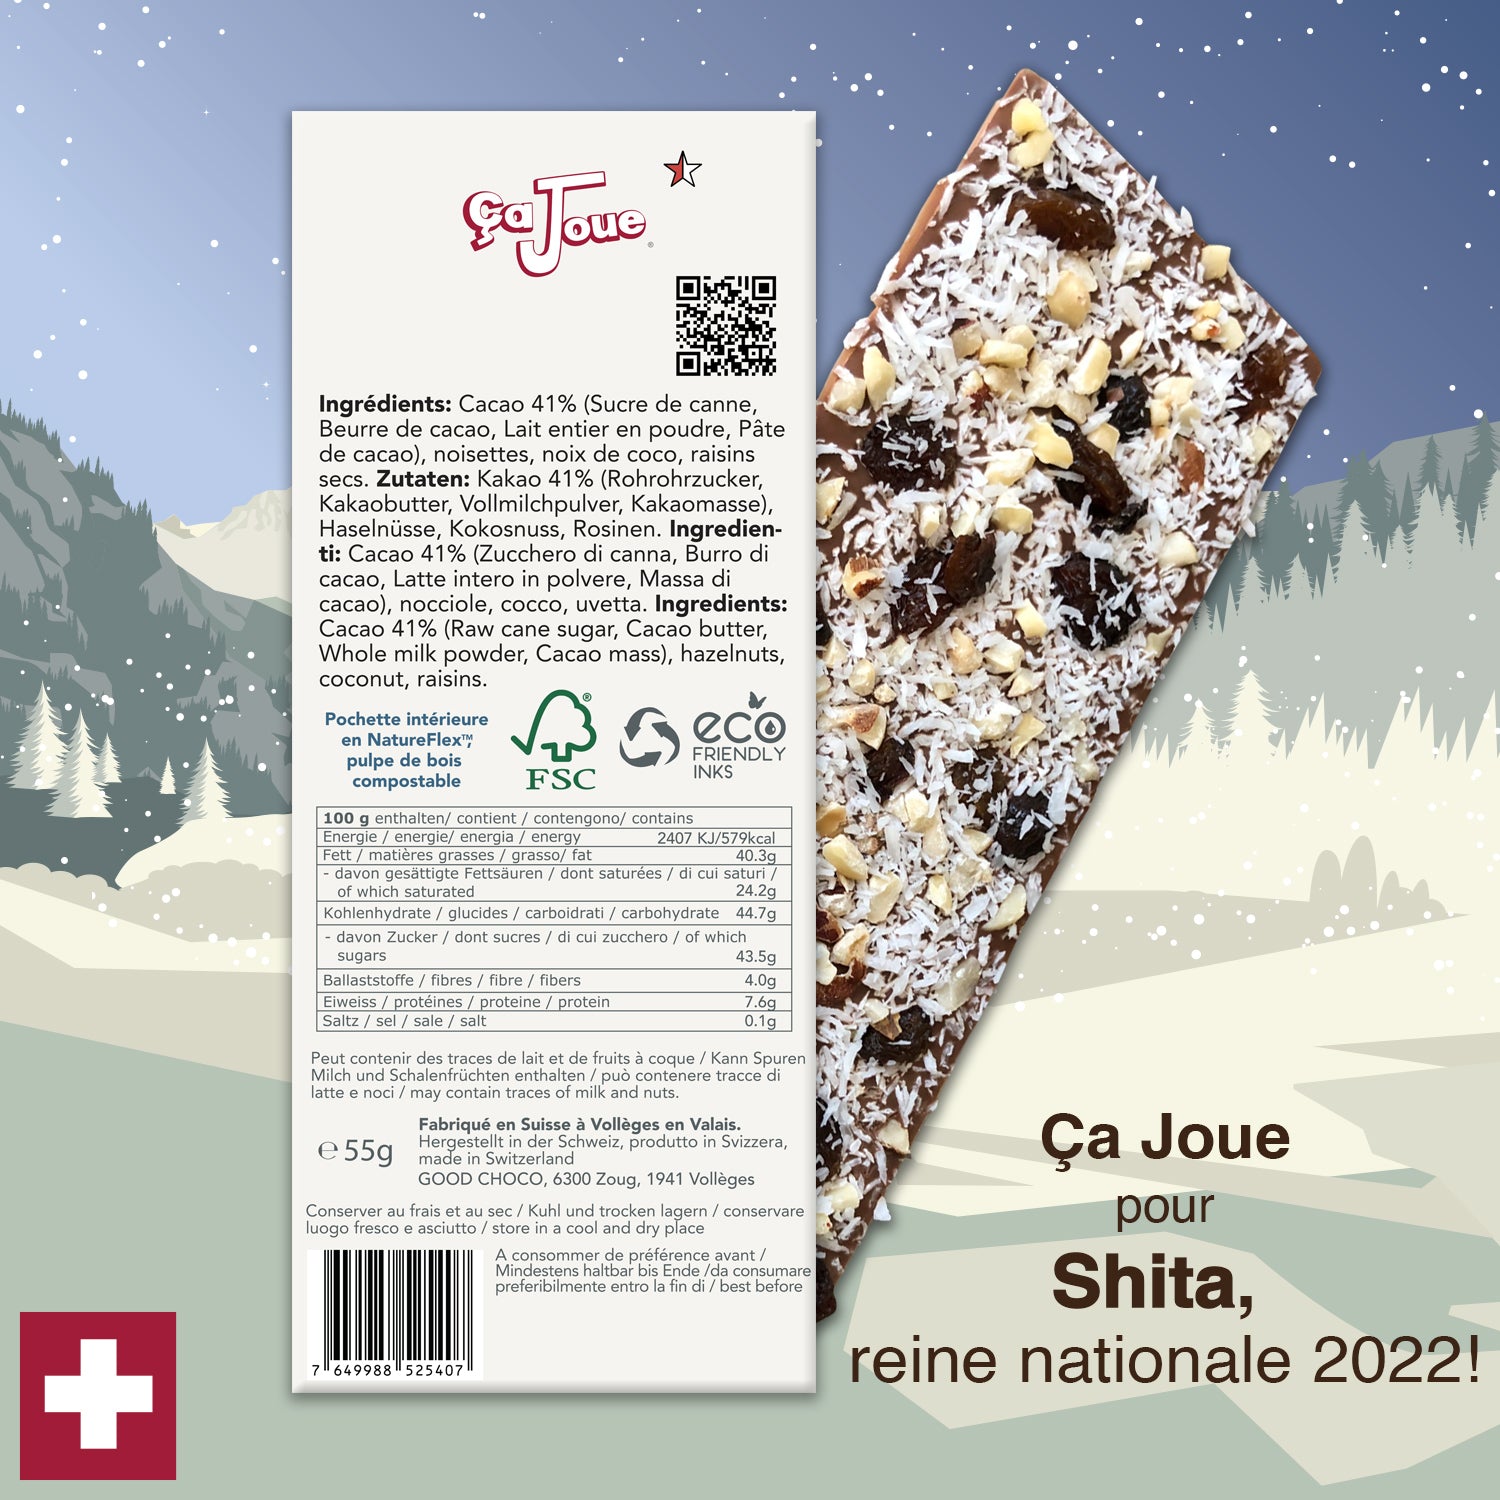 Ça Joue for Queen Shita (Ref-BL5) Milk Chocolate from Val de Bagnes